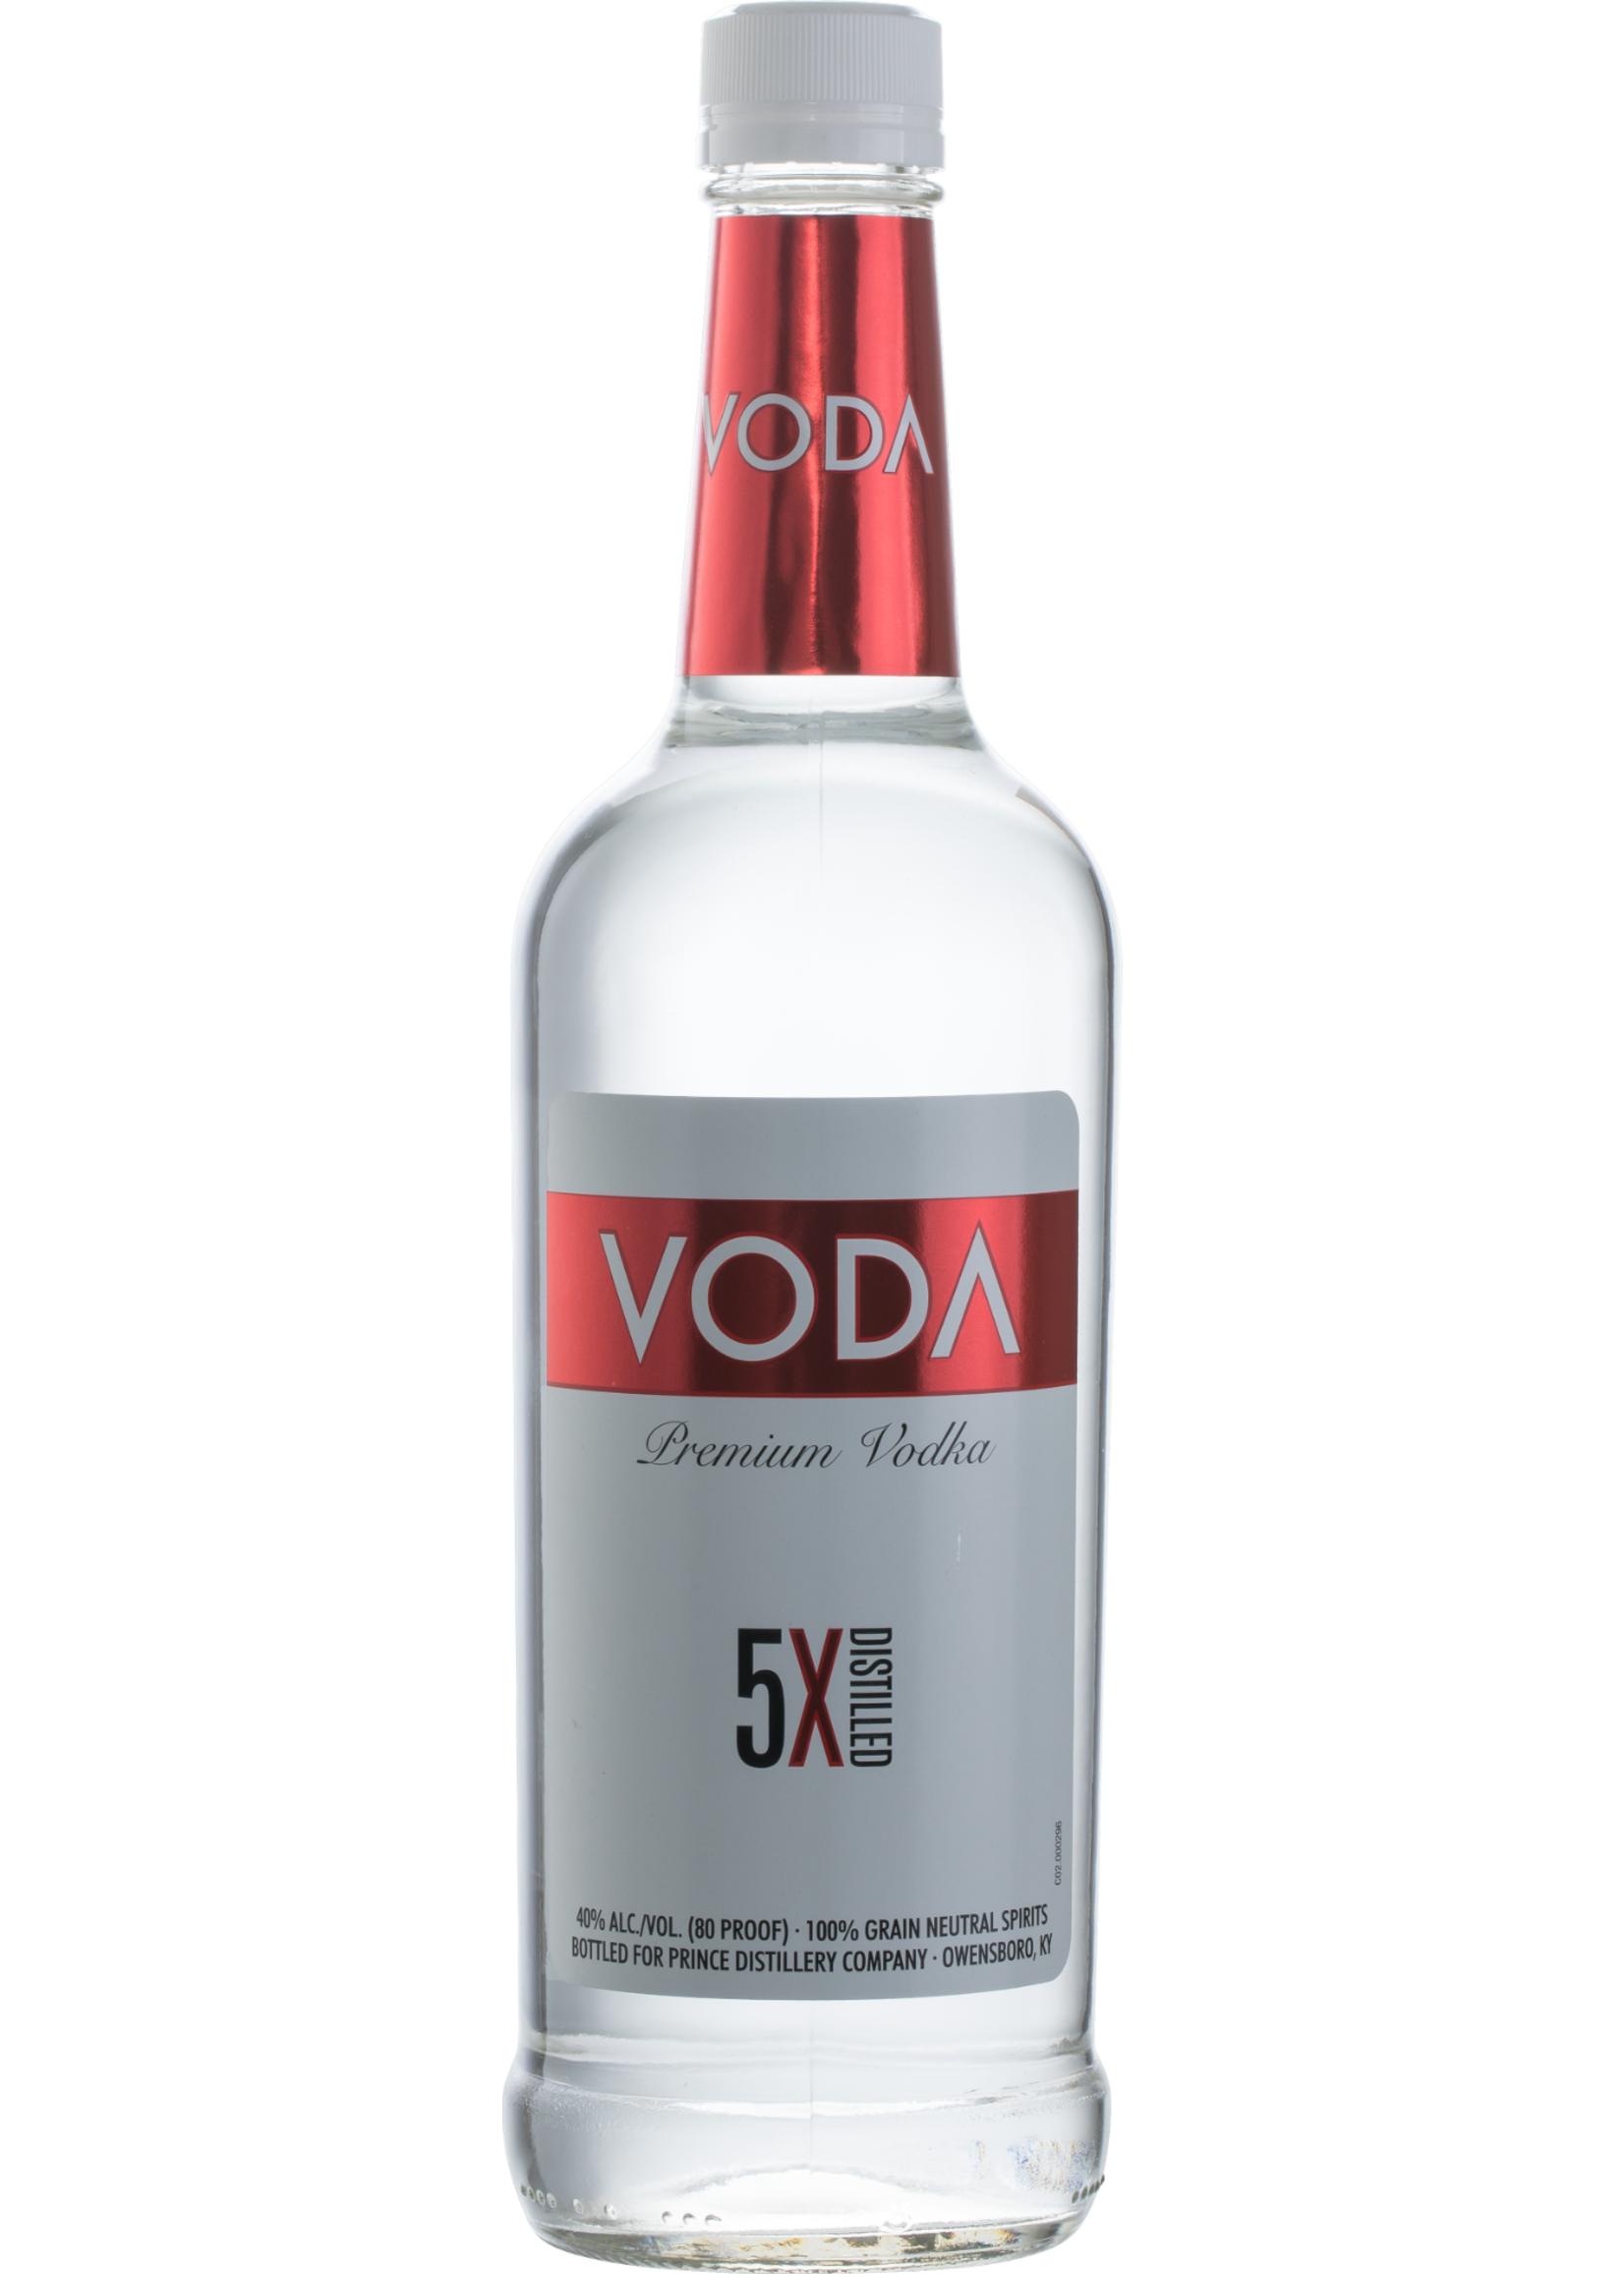 Voda Voda / Vodka